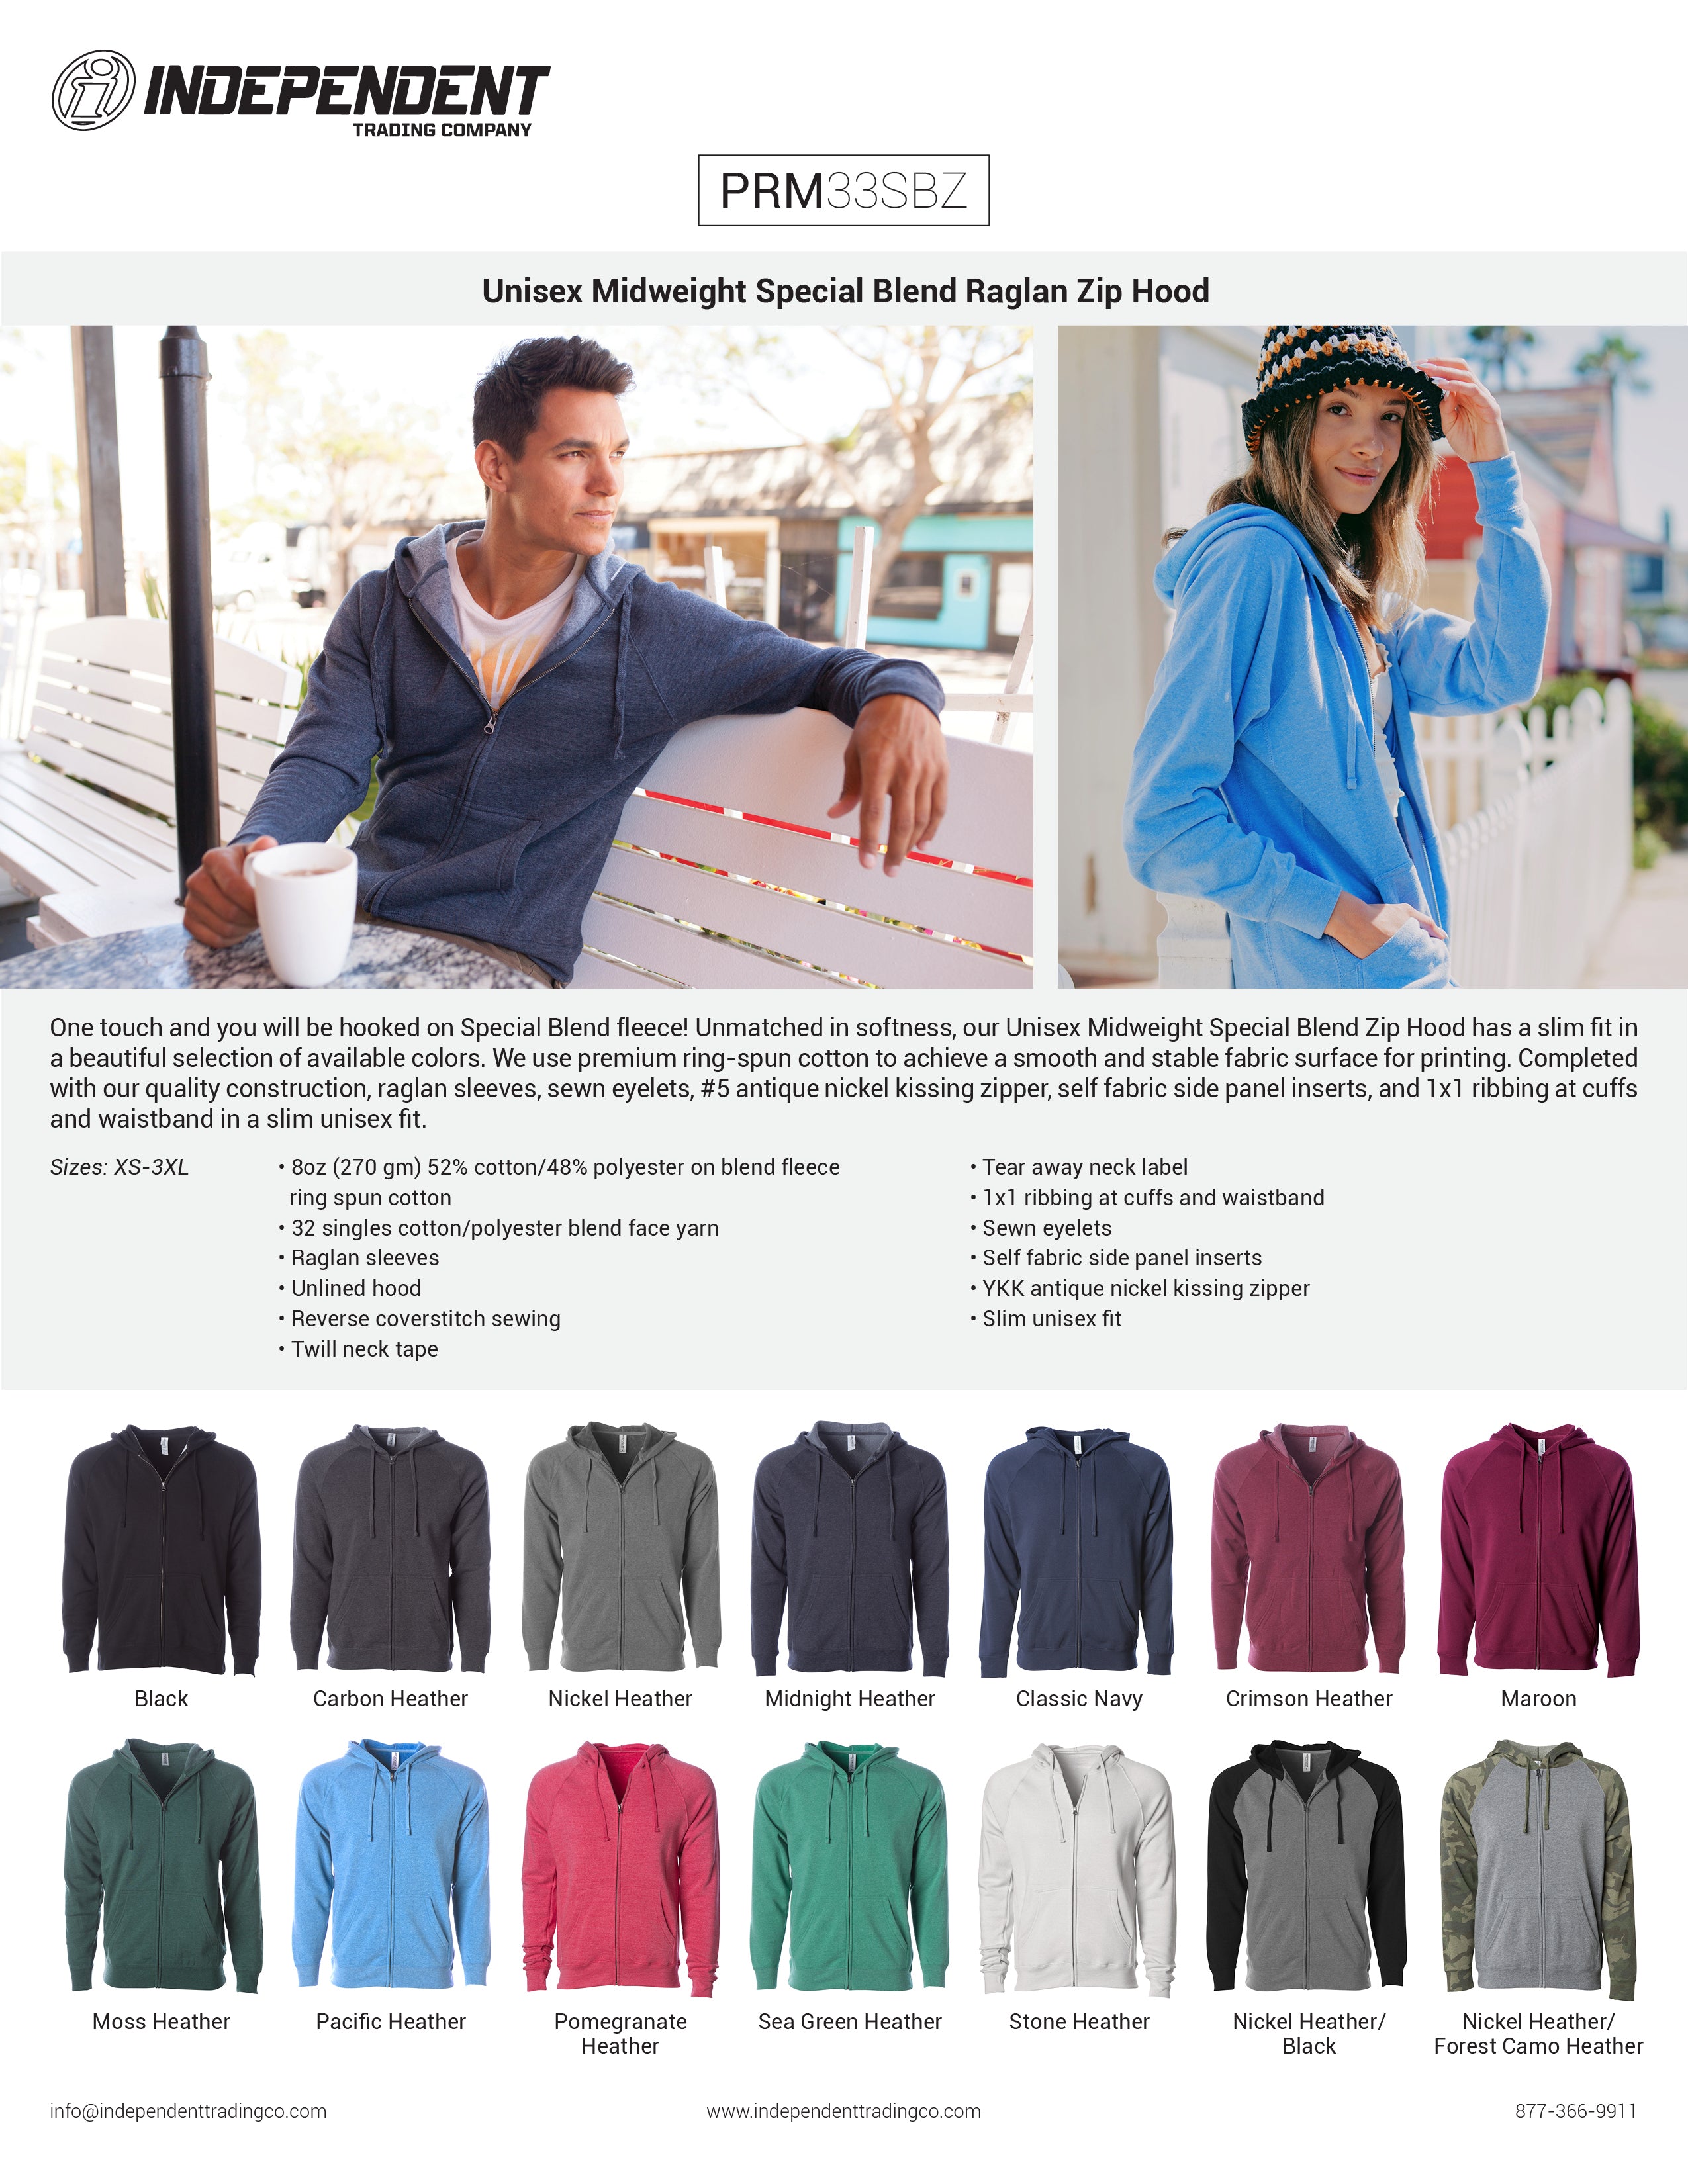 PRM33SBZ Unisex Special Blend Zip Hooded Sweatshirt